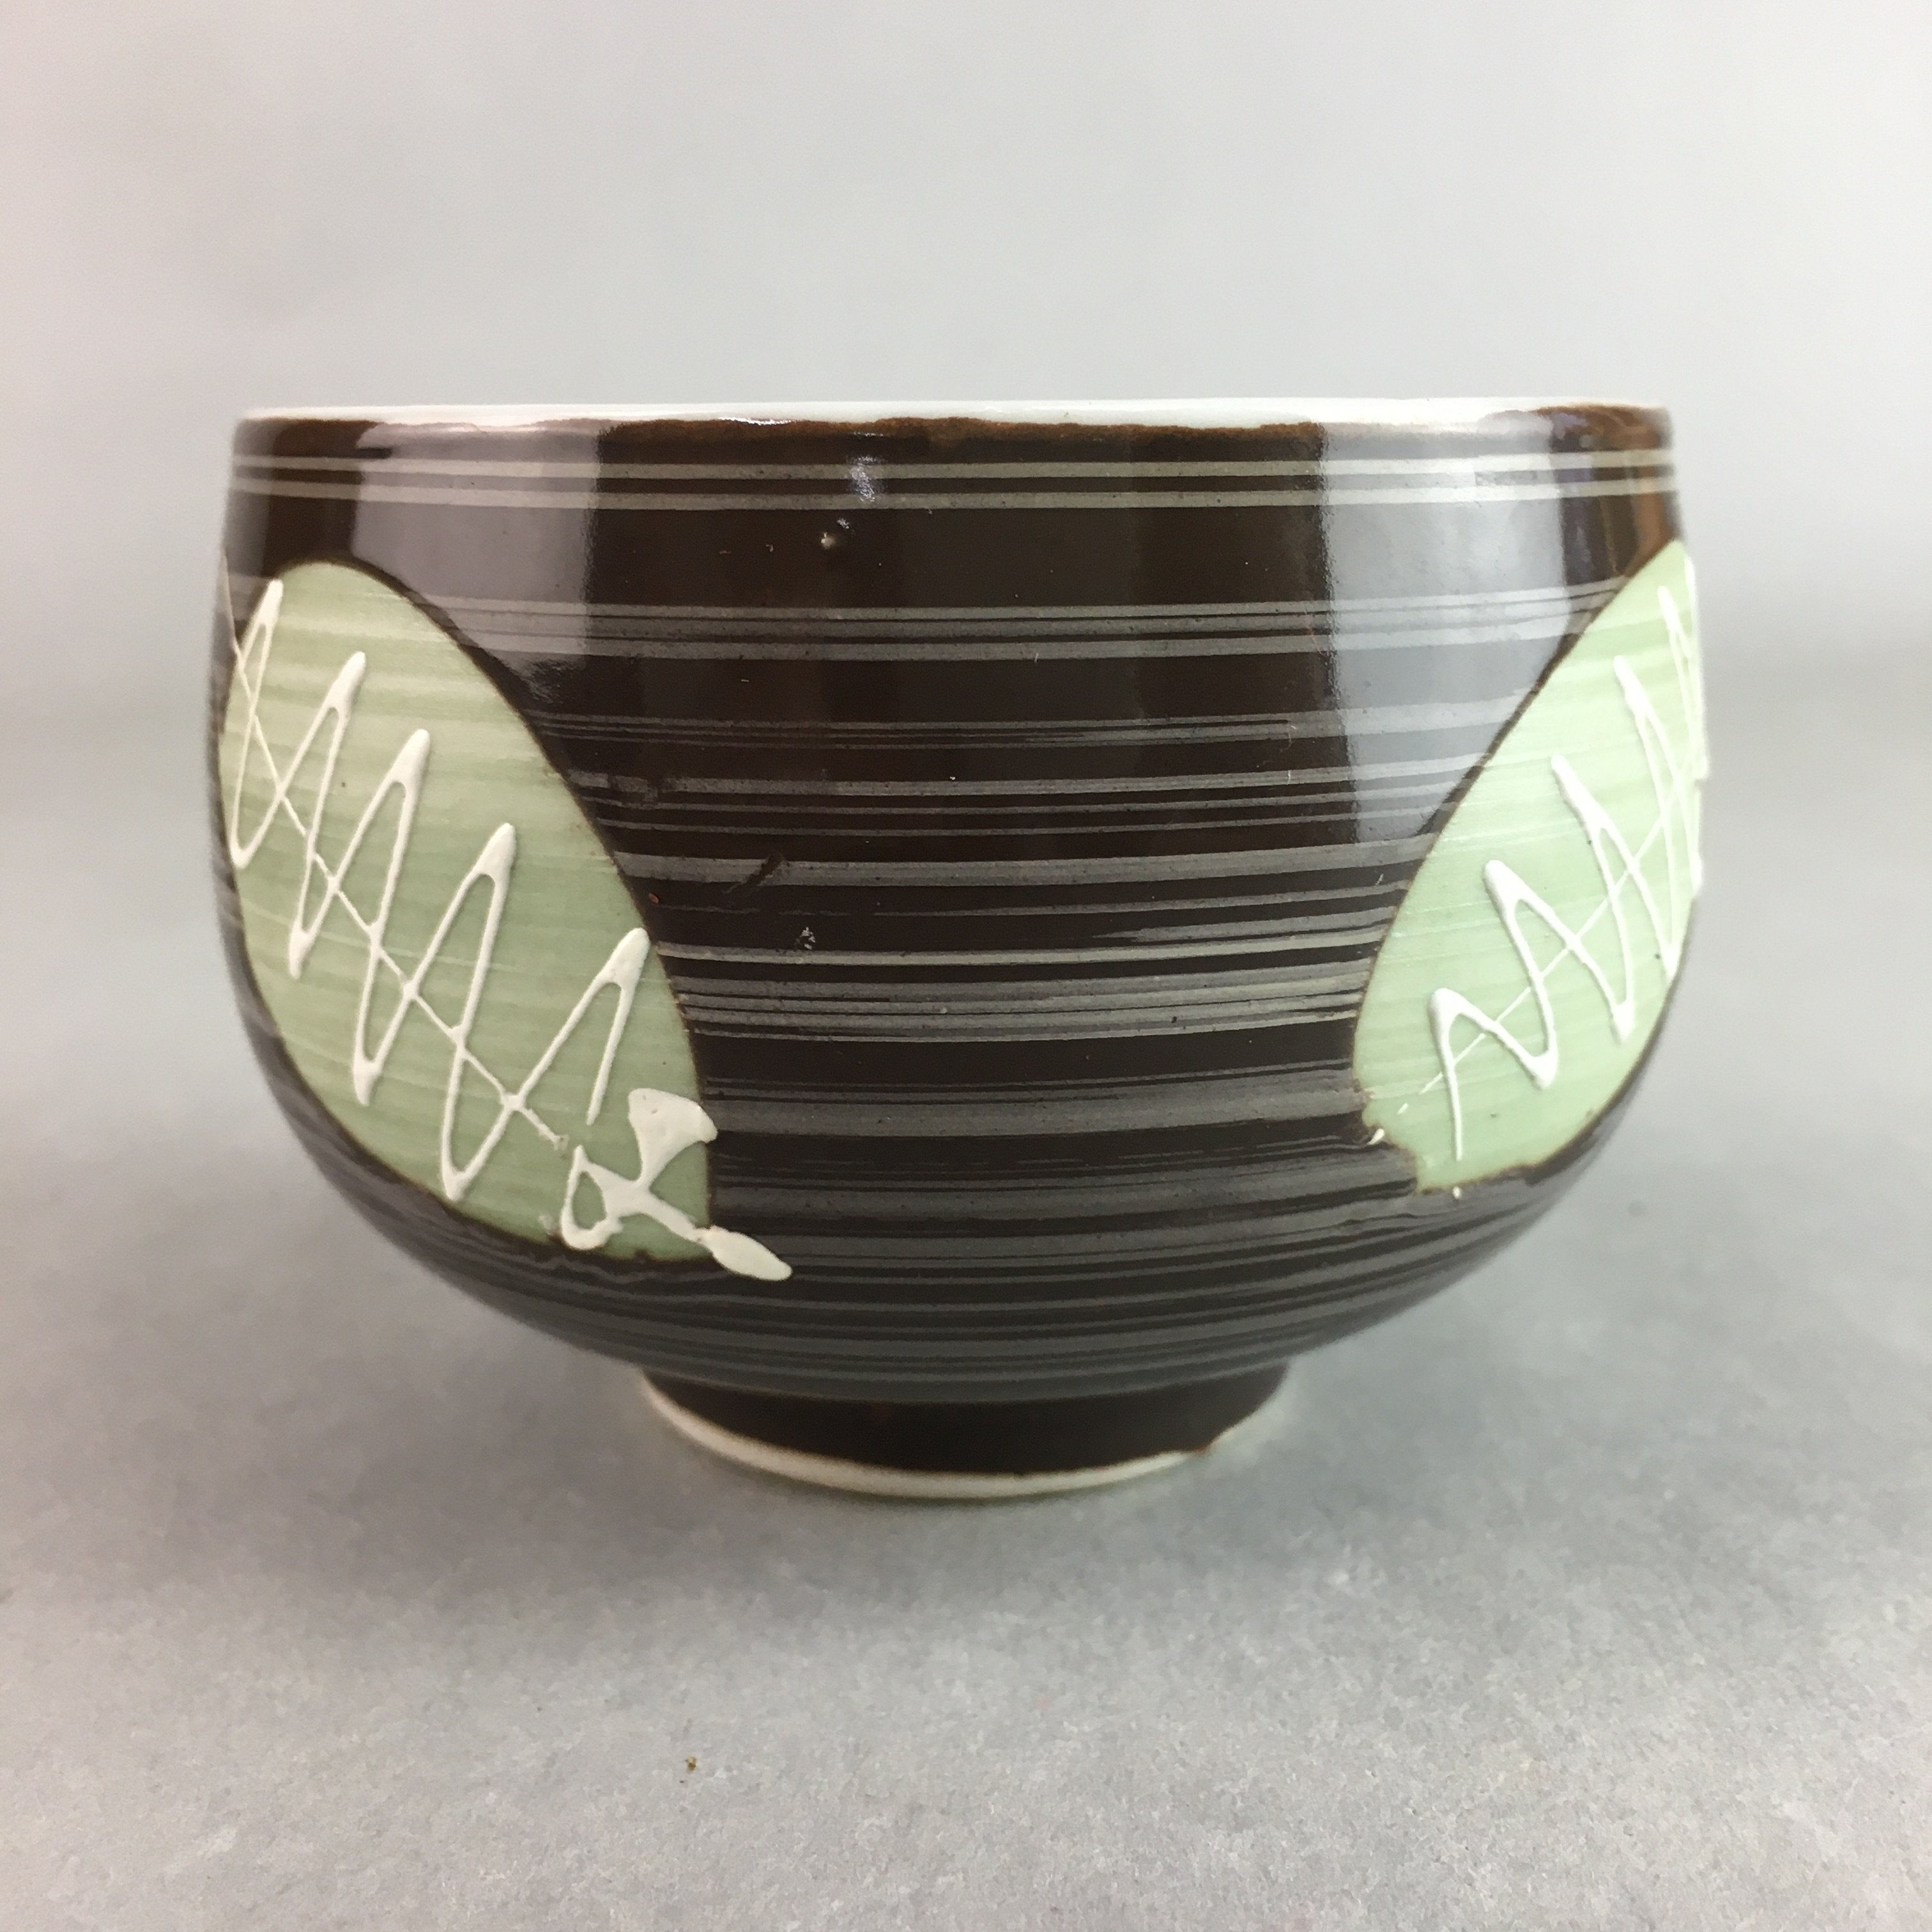 Japanese Porcelain Teacup Yunomi Vtg Sencha Brown Green Leaf Stripe TC142